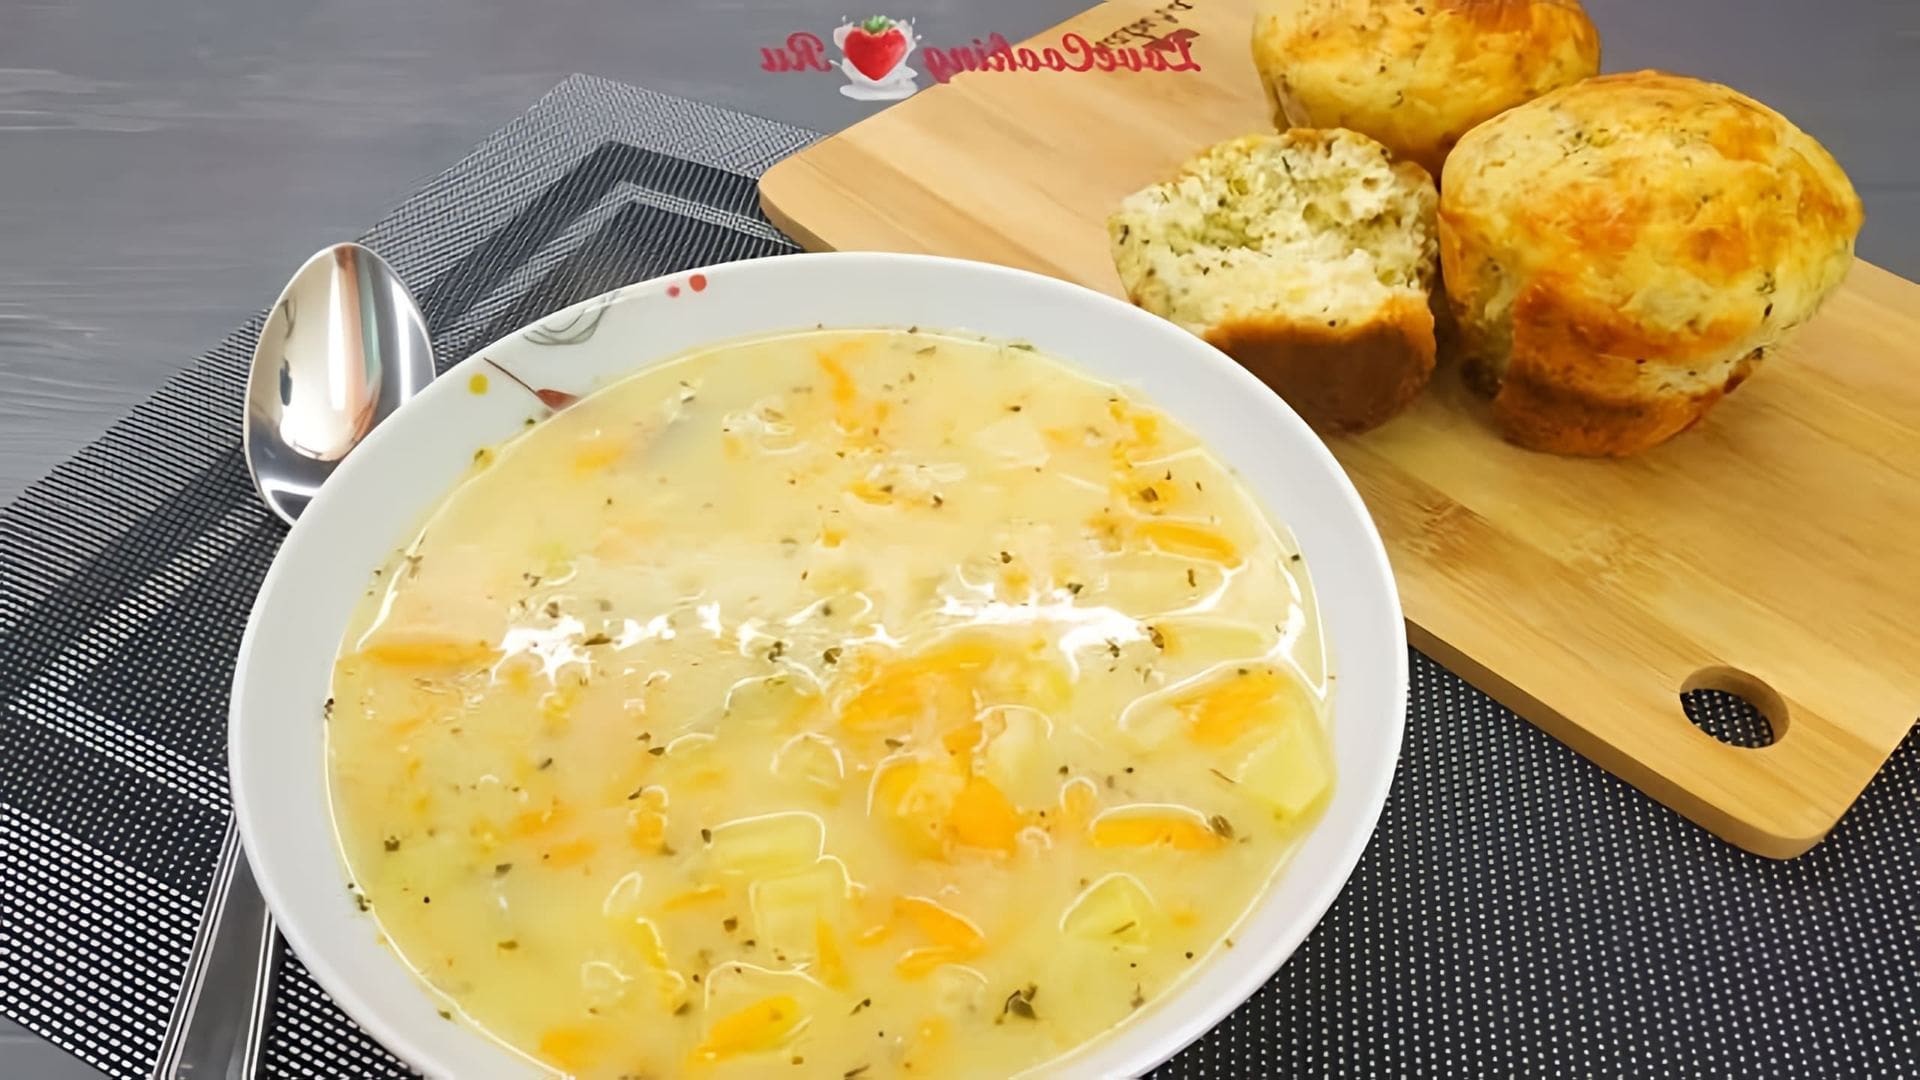 "Сырбушка - овощной суп на молочной сыворотке" - это видео-ролик, который демонстрирует процесс приготовления вкусного и полезного овощного супа на основе молочной сыворотки